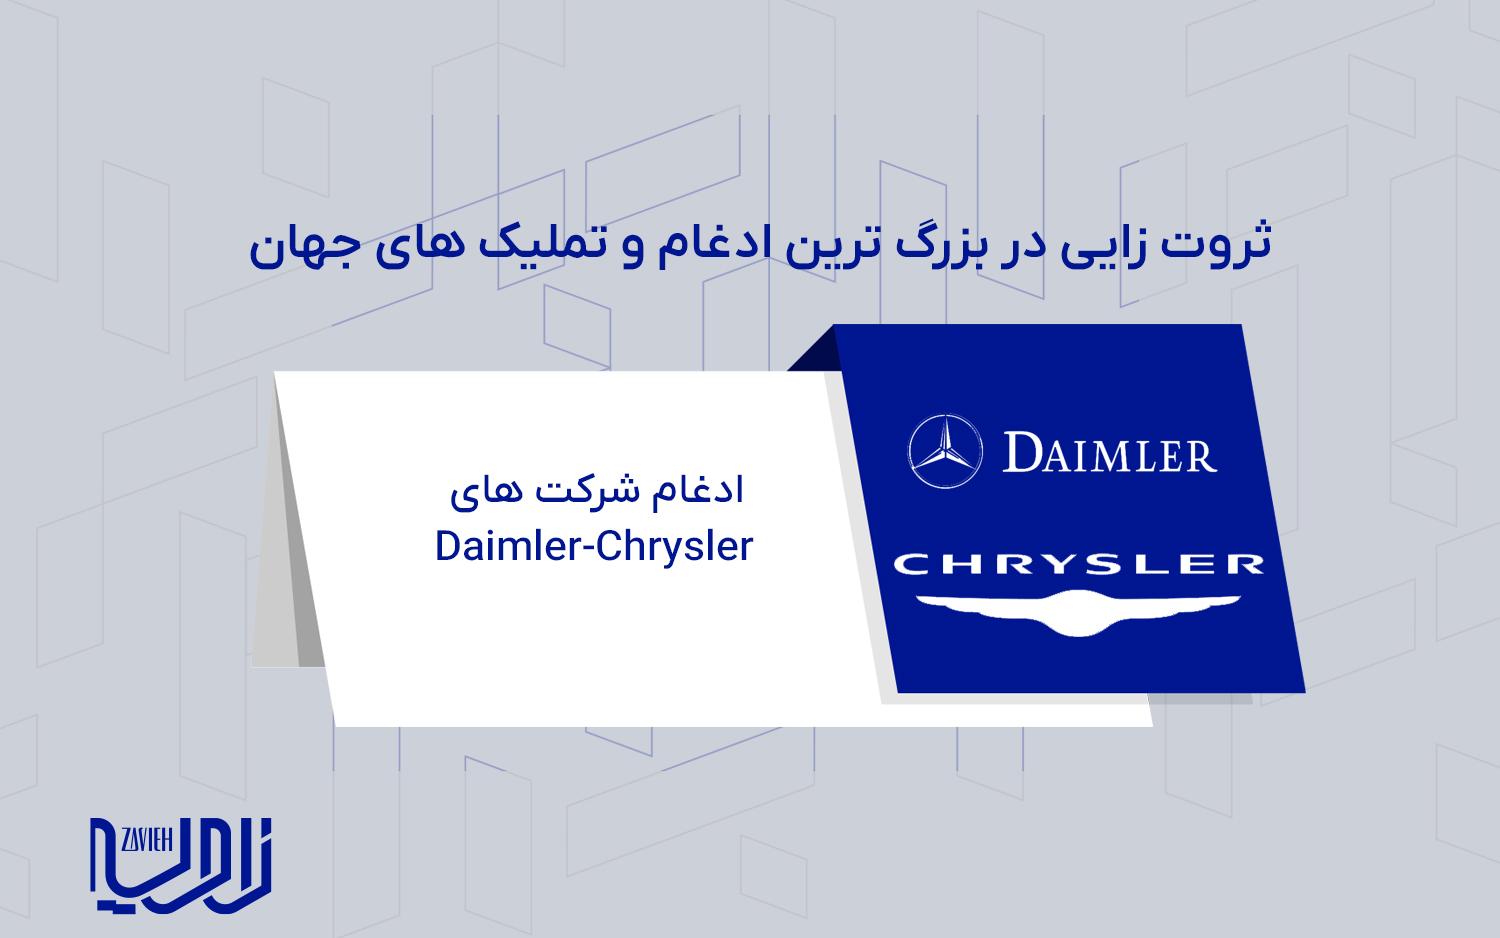 ادغام شرکت های Daimler-Chrysler